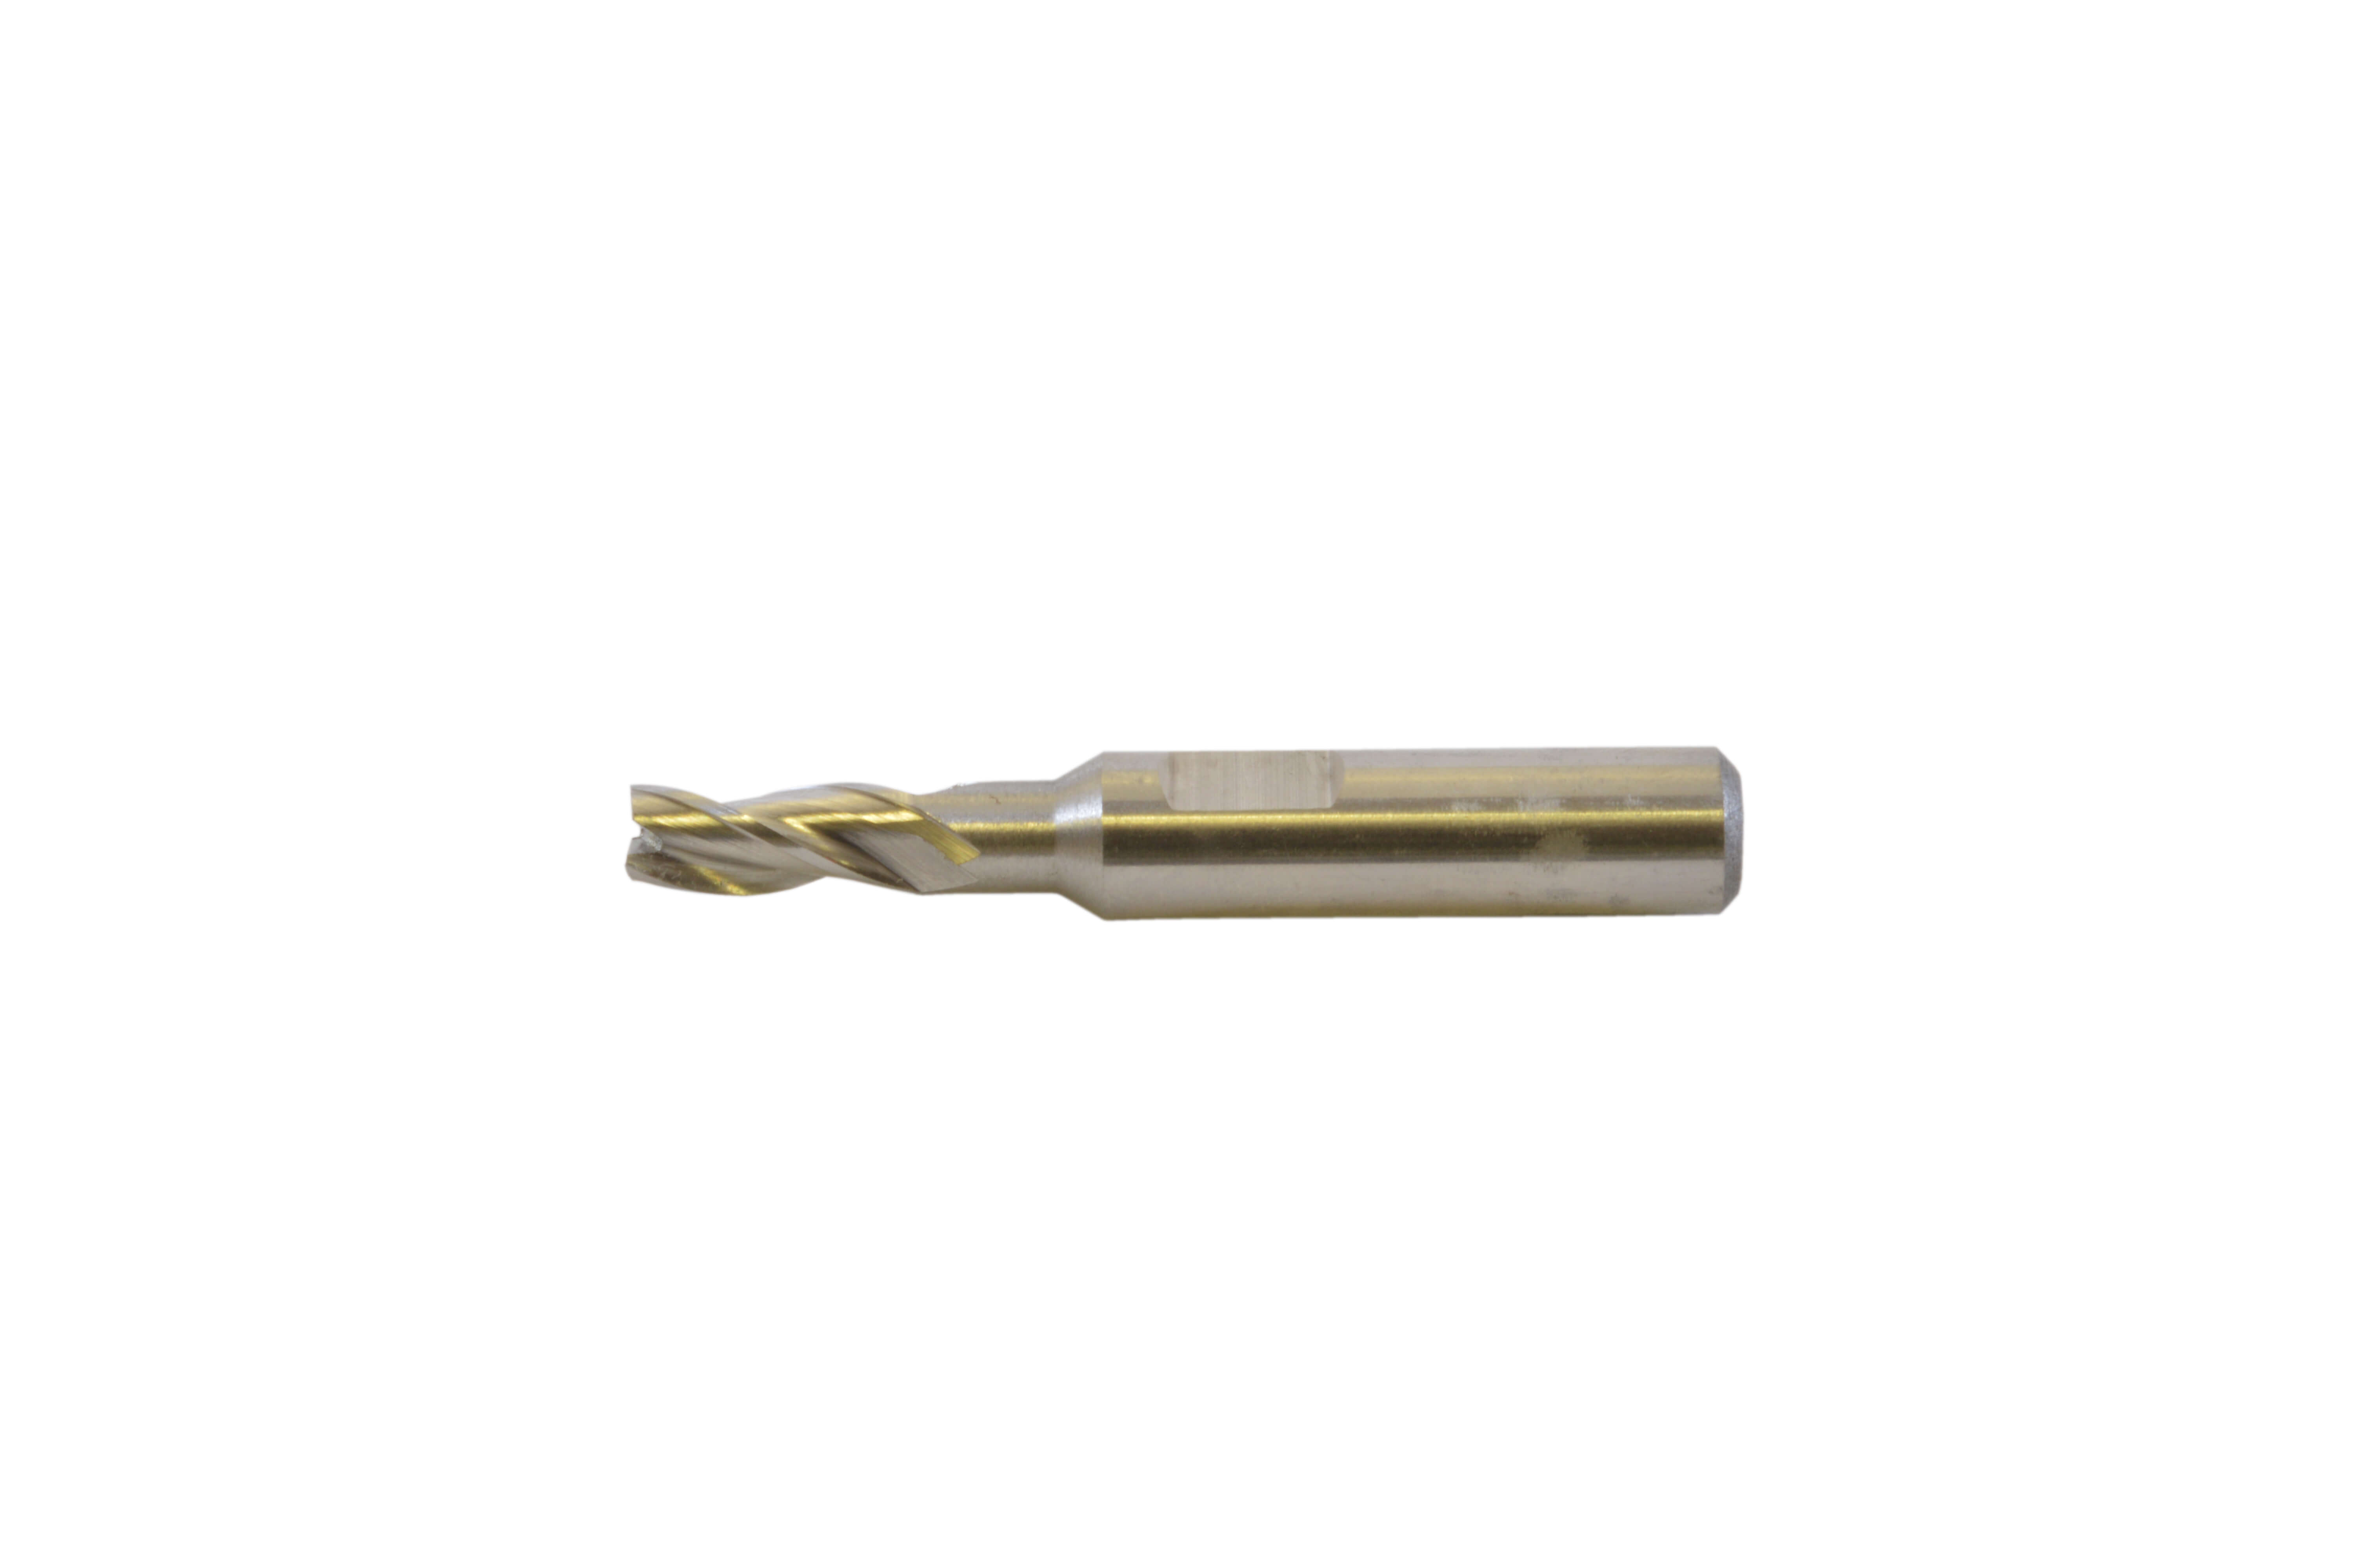 Borman HSS Small Milling Cutter - Long Series - 2.5mm